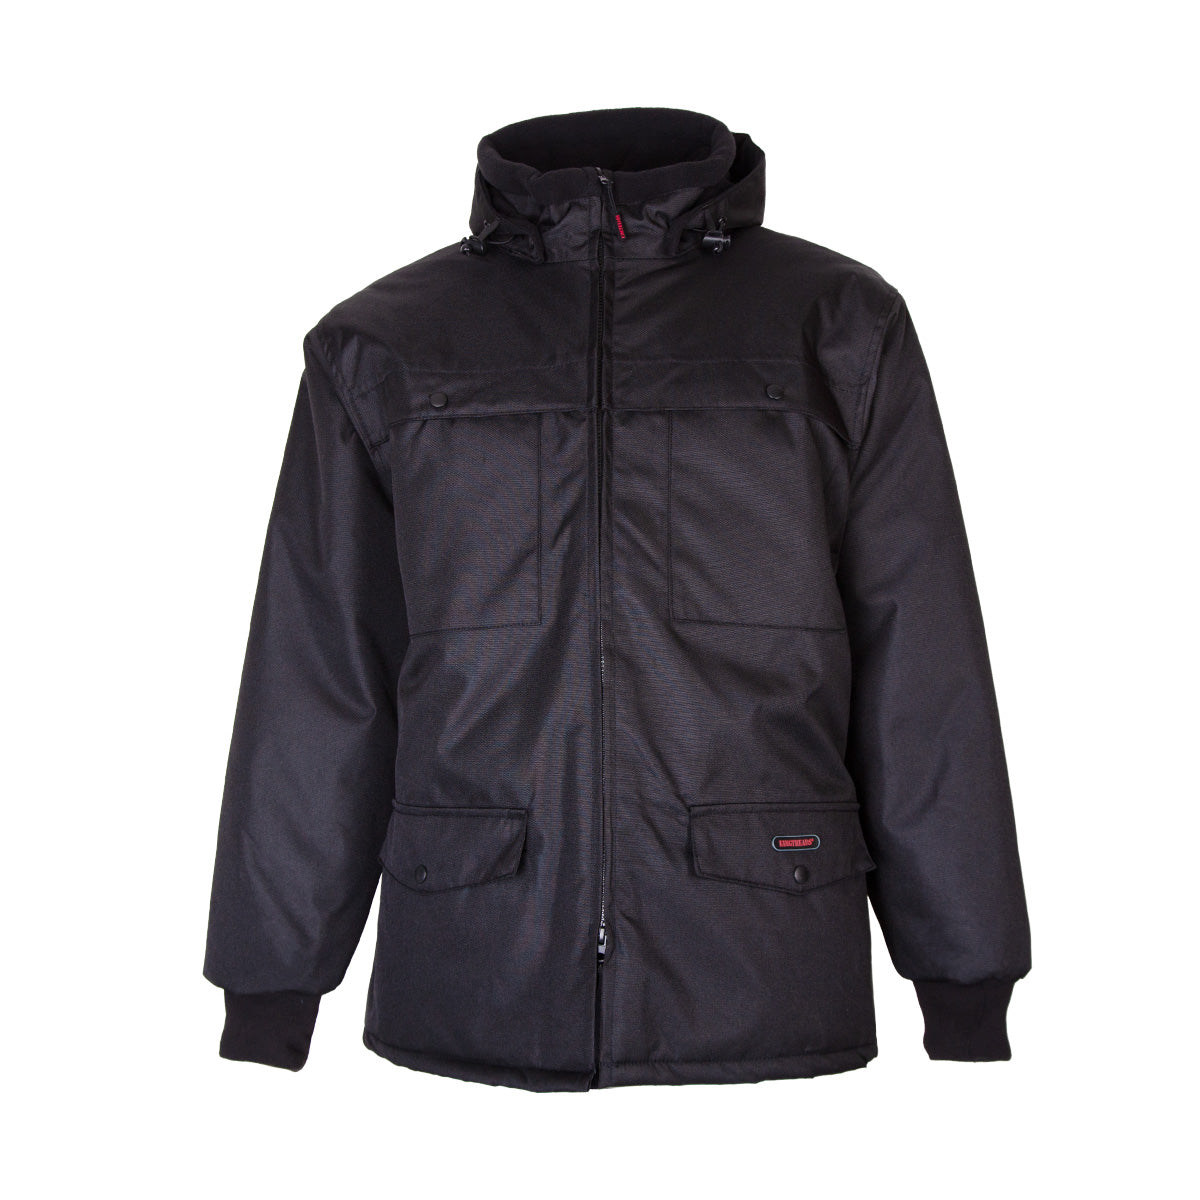 Coat (Parka) waterproof with winter jacket for men